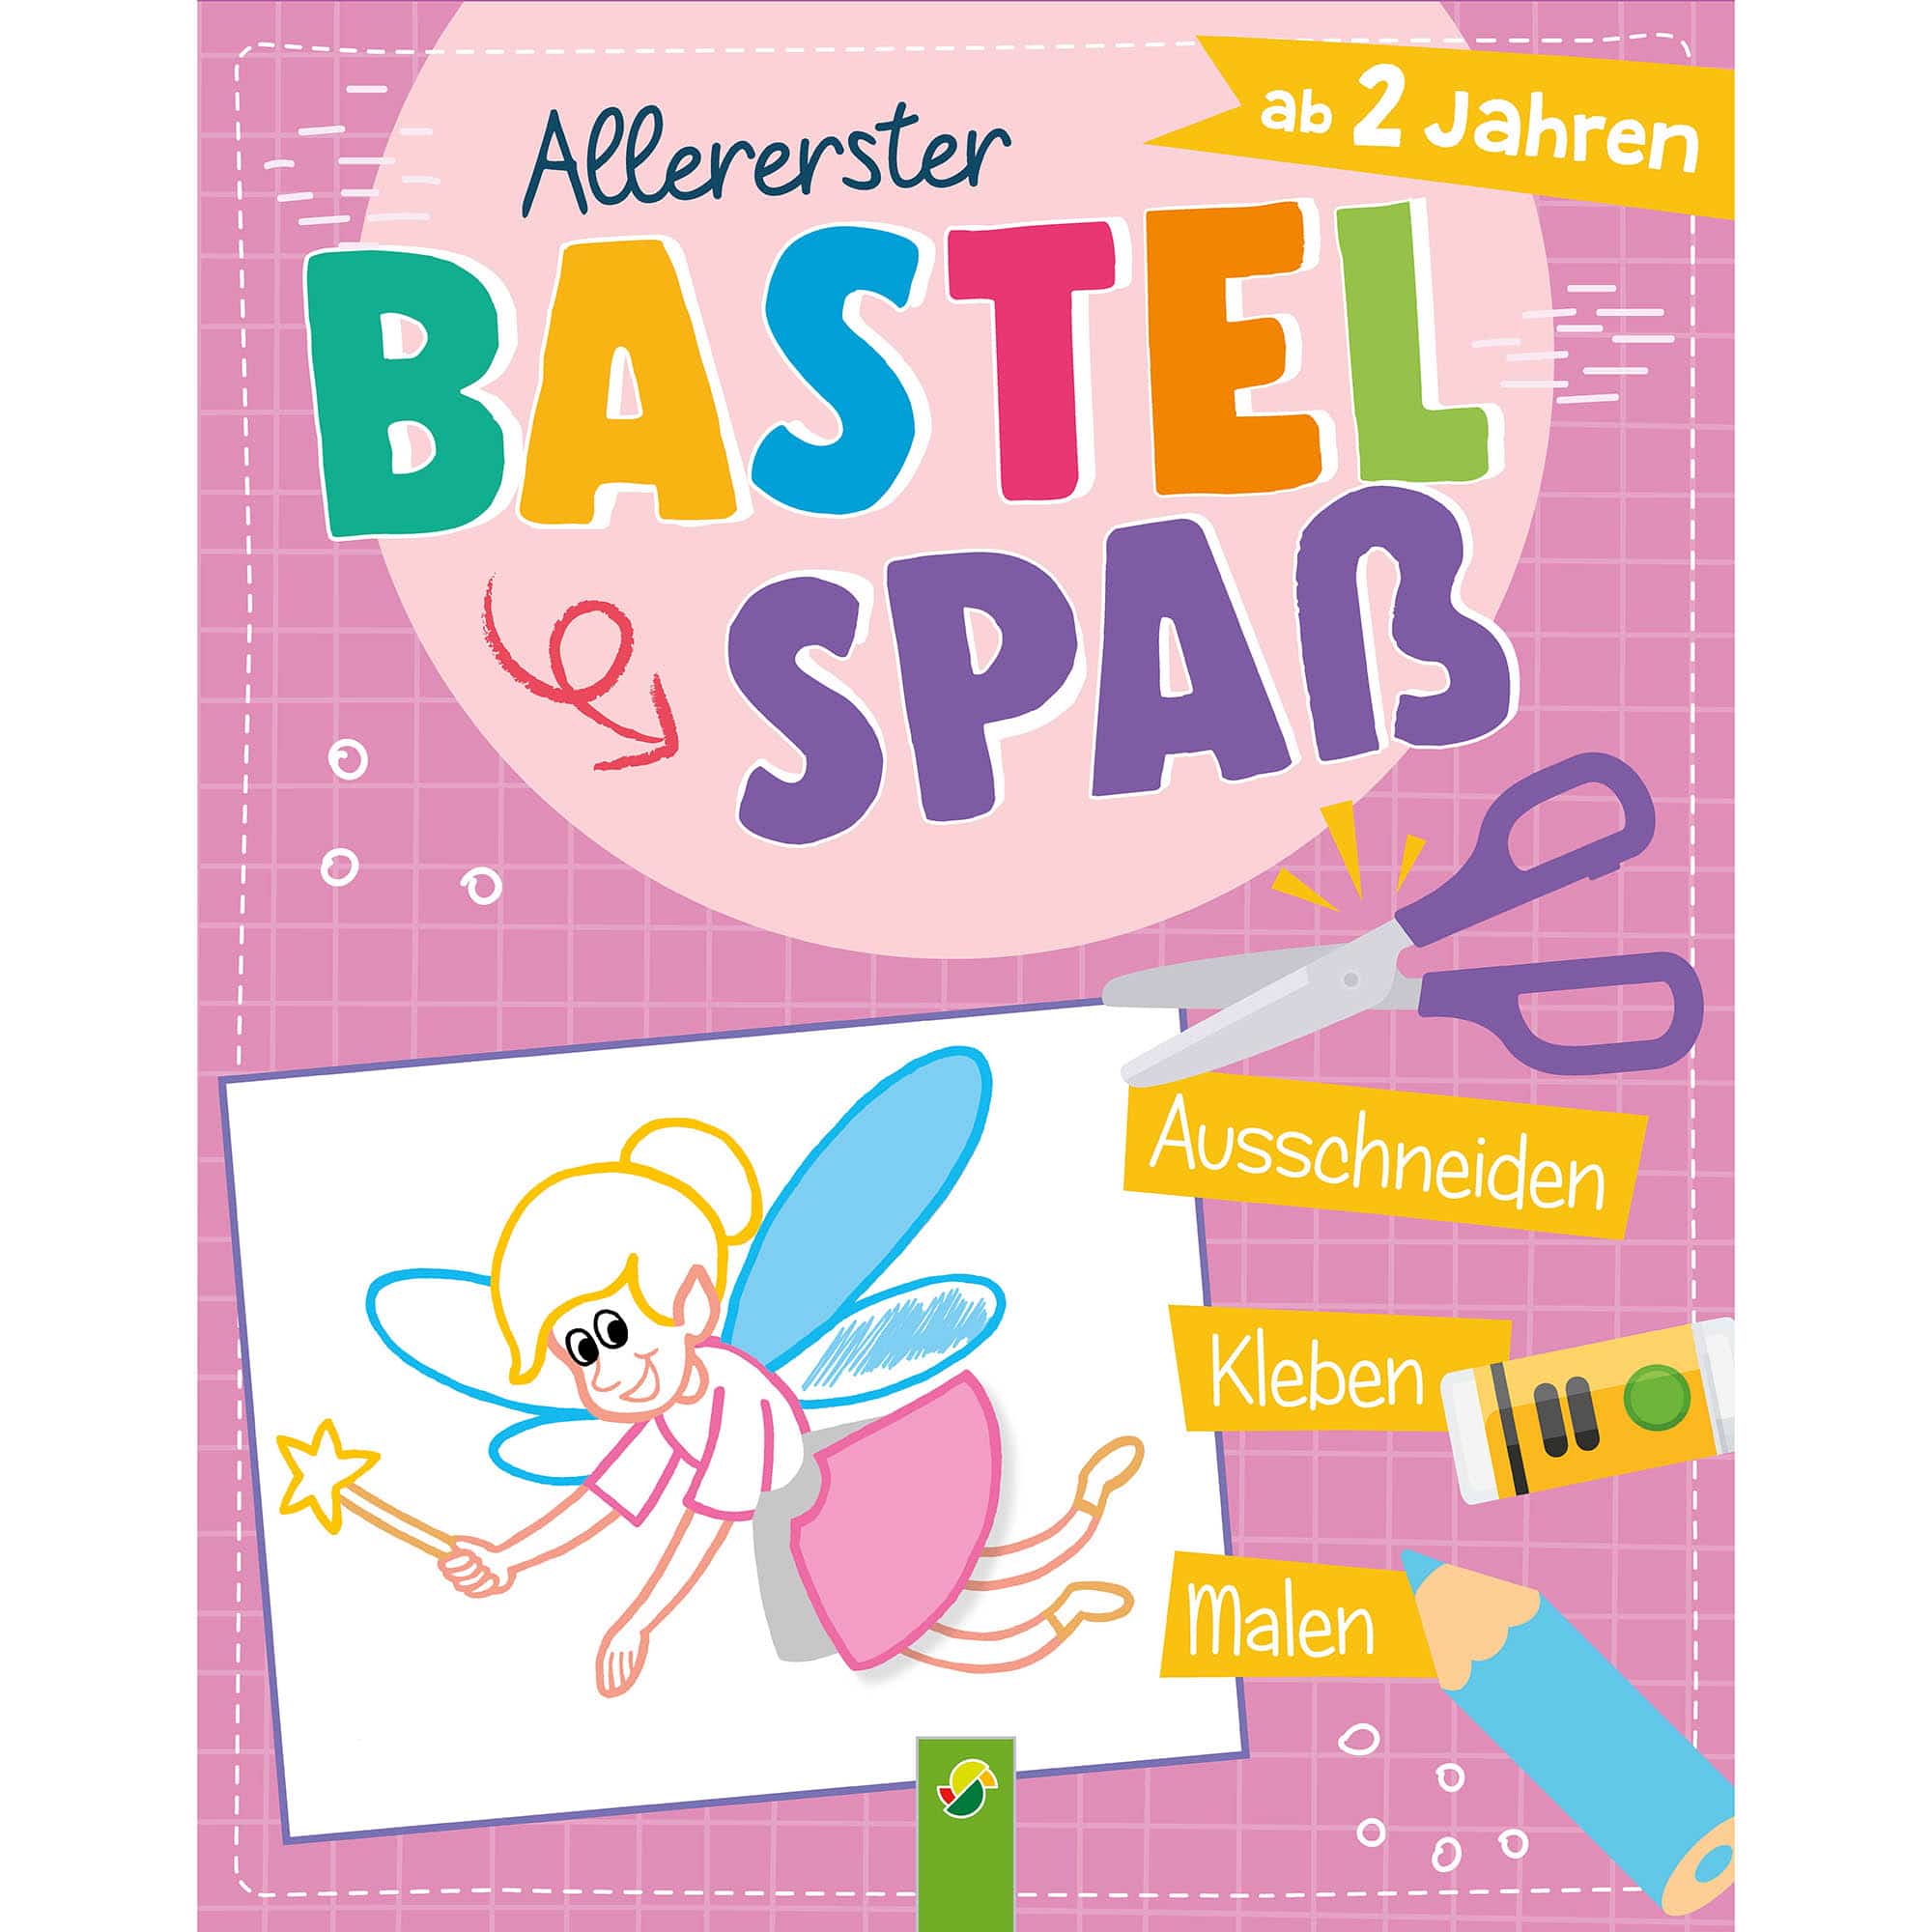 Allererster Bastelspaß - Fee Schwager&Steinl 2000584478705 1